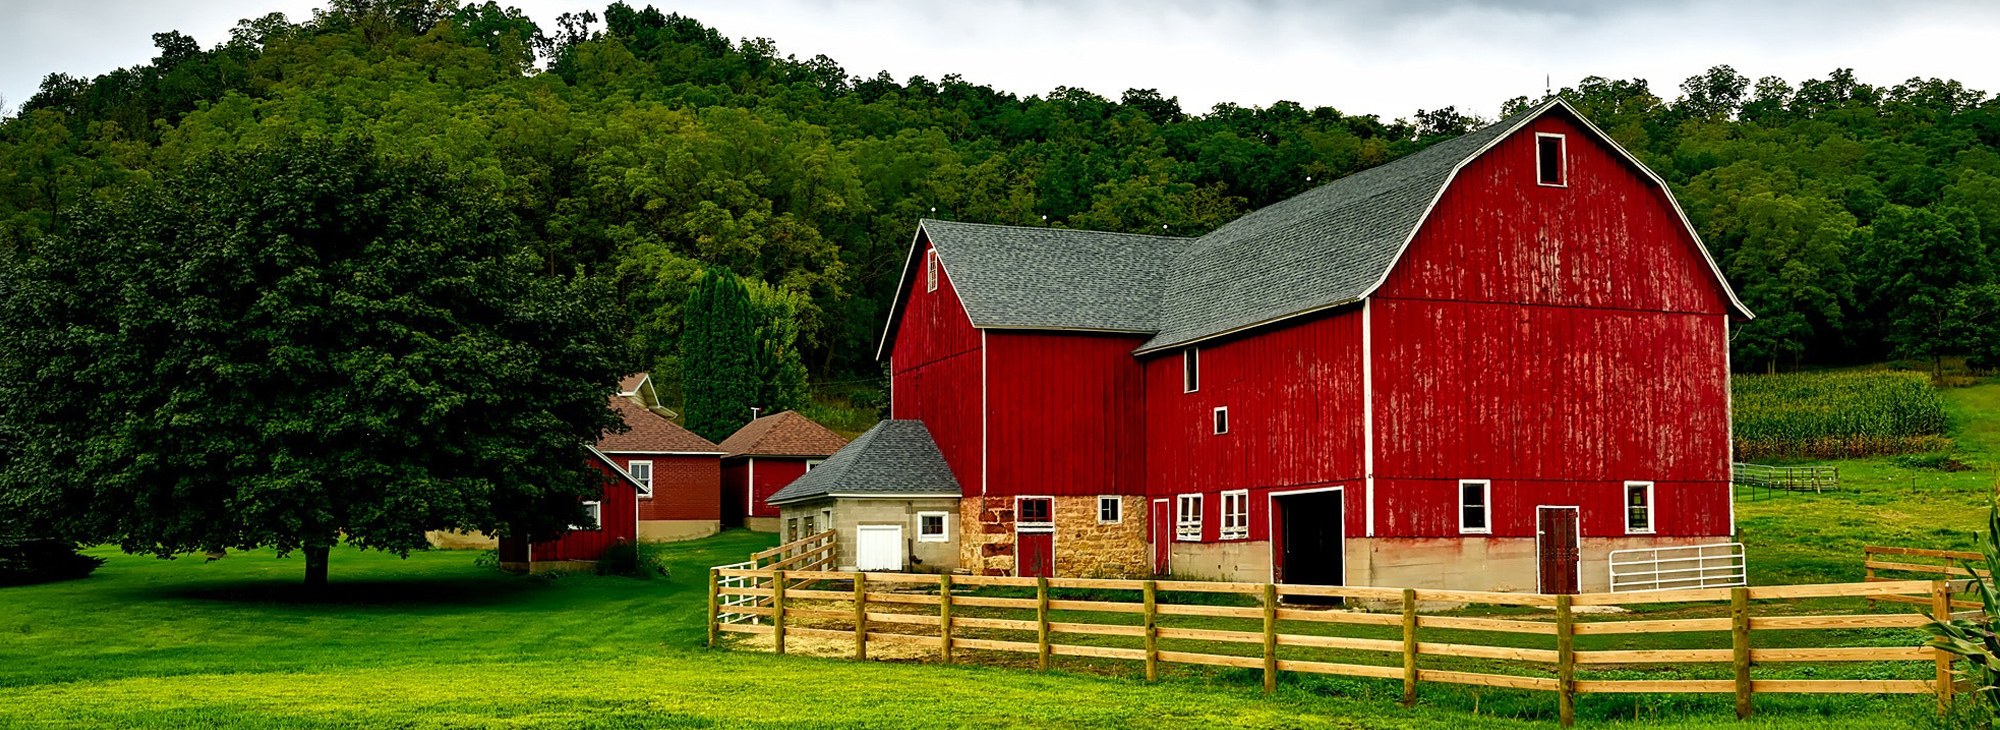 Beautiful Red Barn